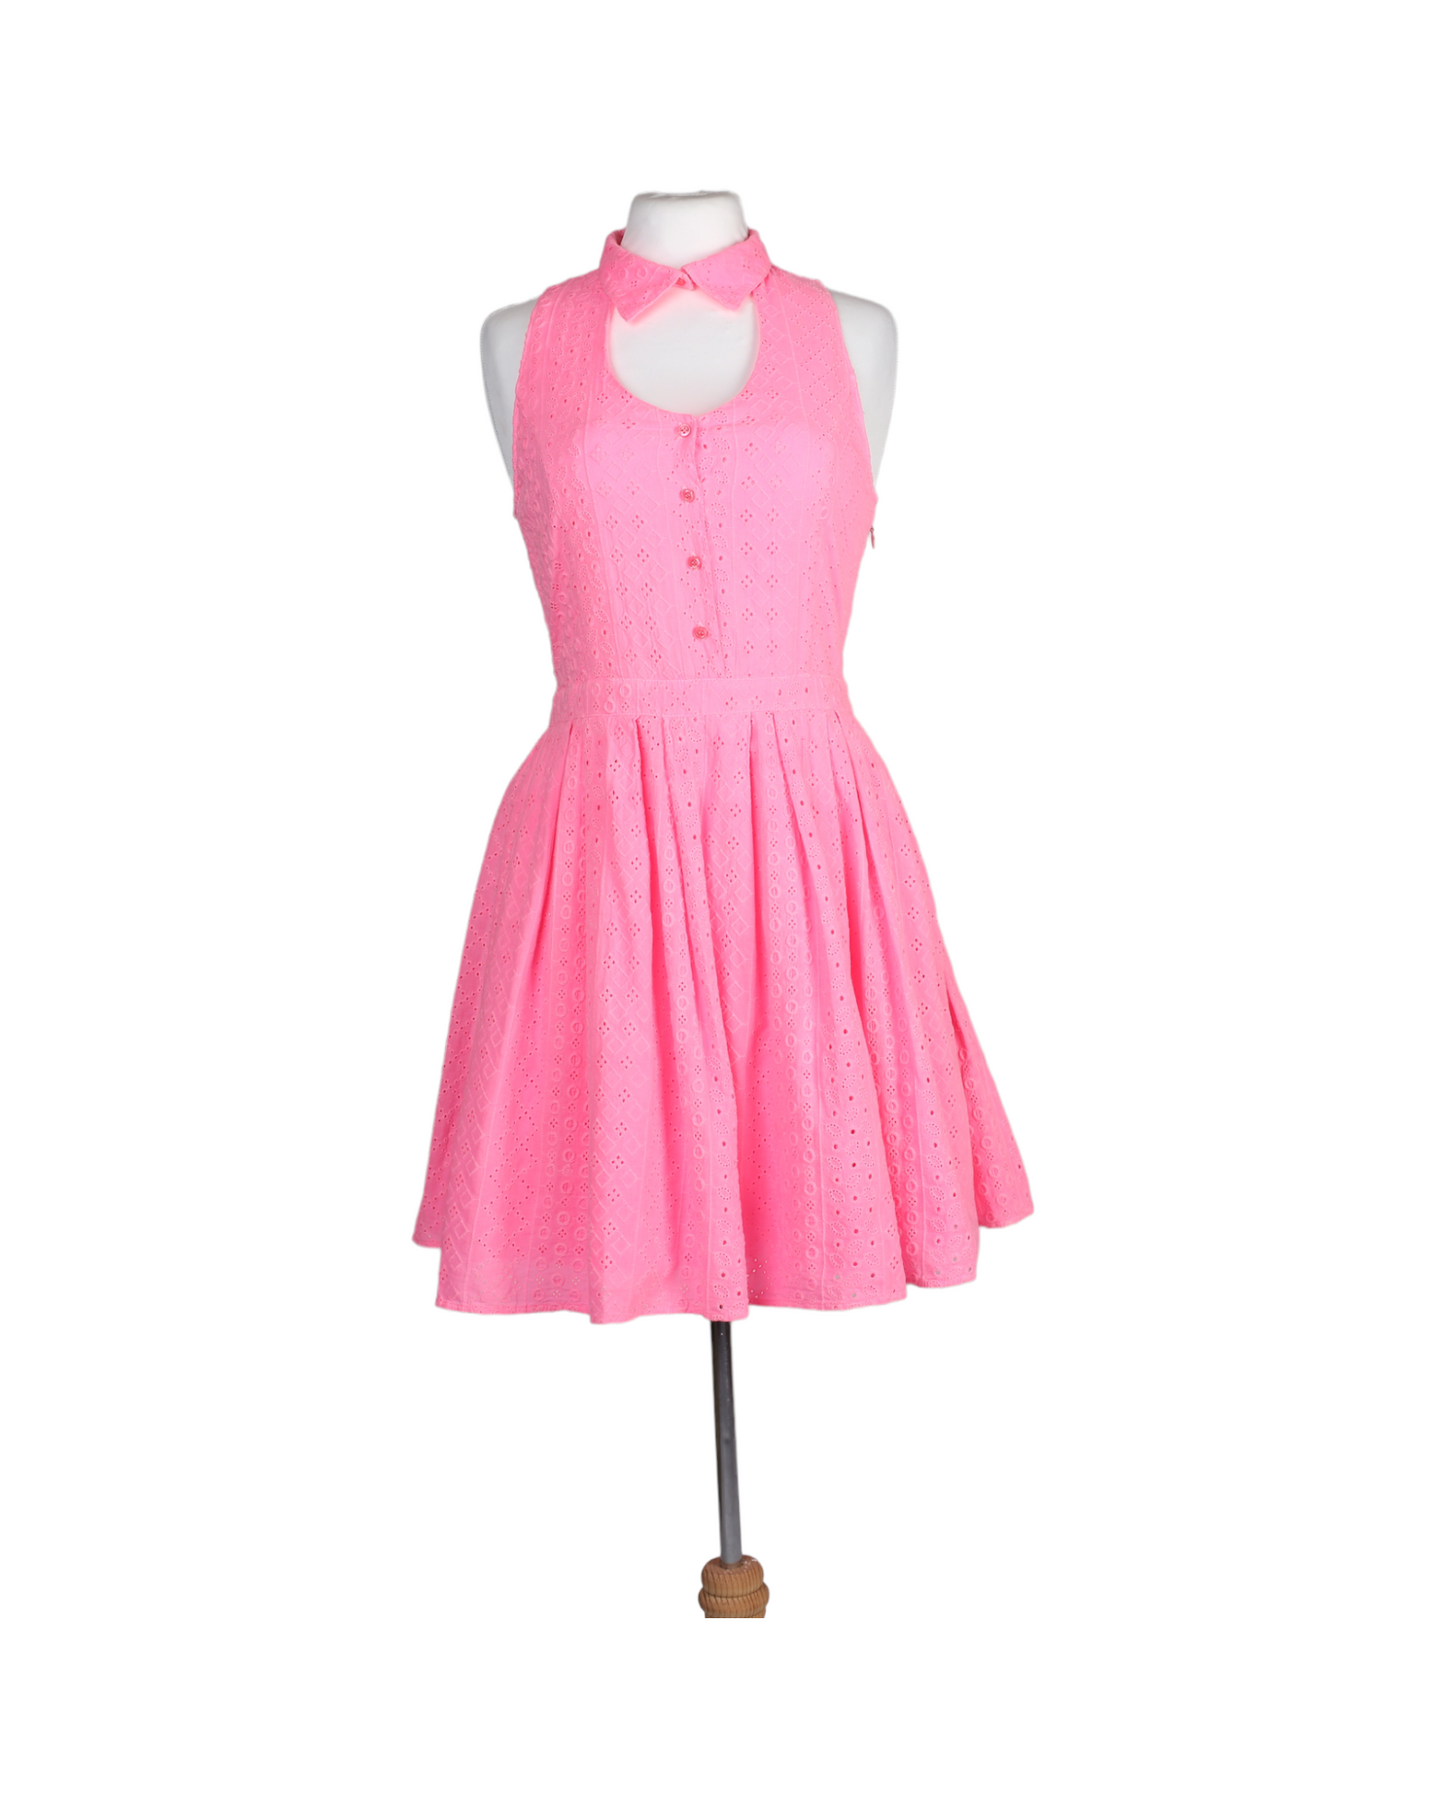 فستان قصير صيفي باللون الزهري الساطع من متجر بريجيت باردو